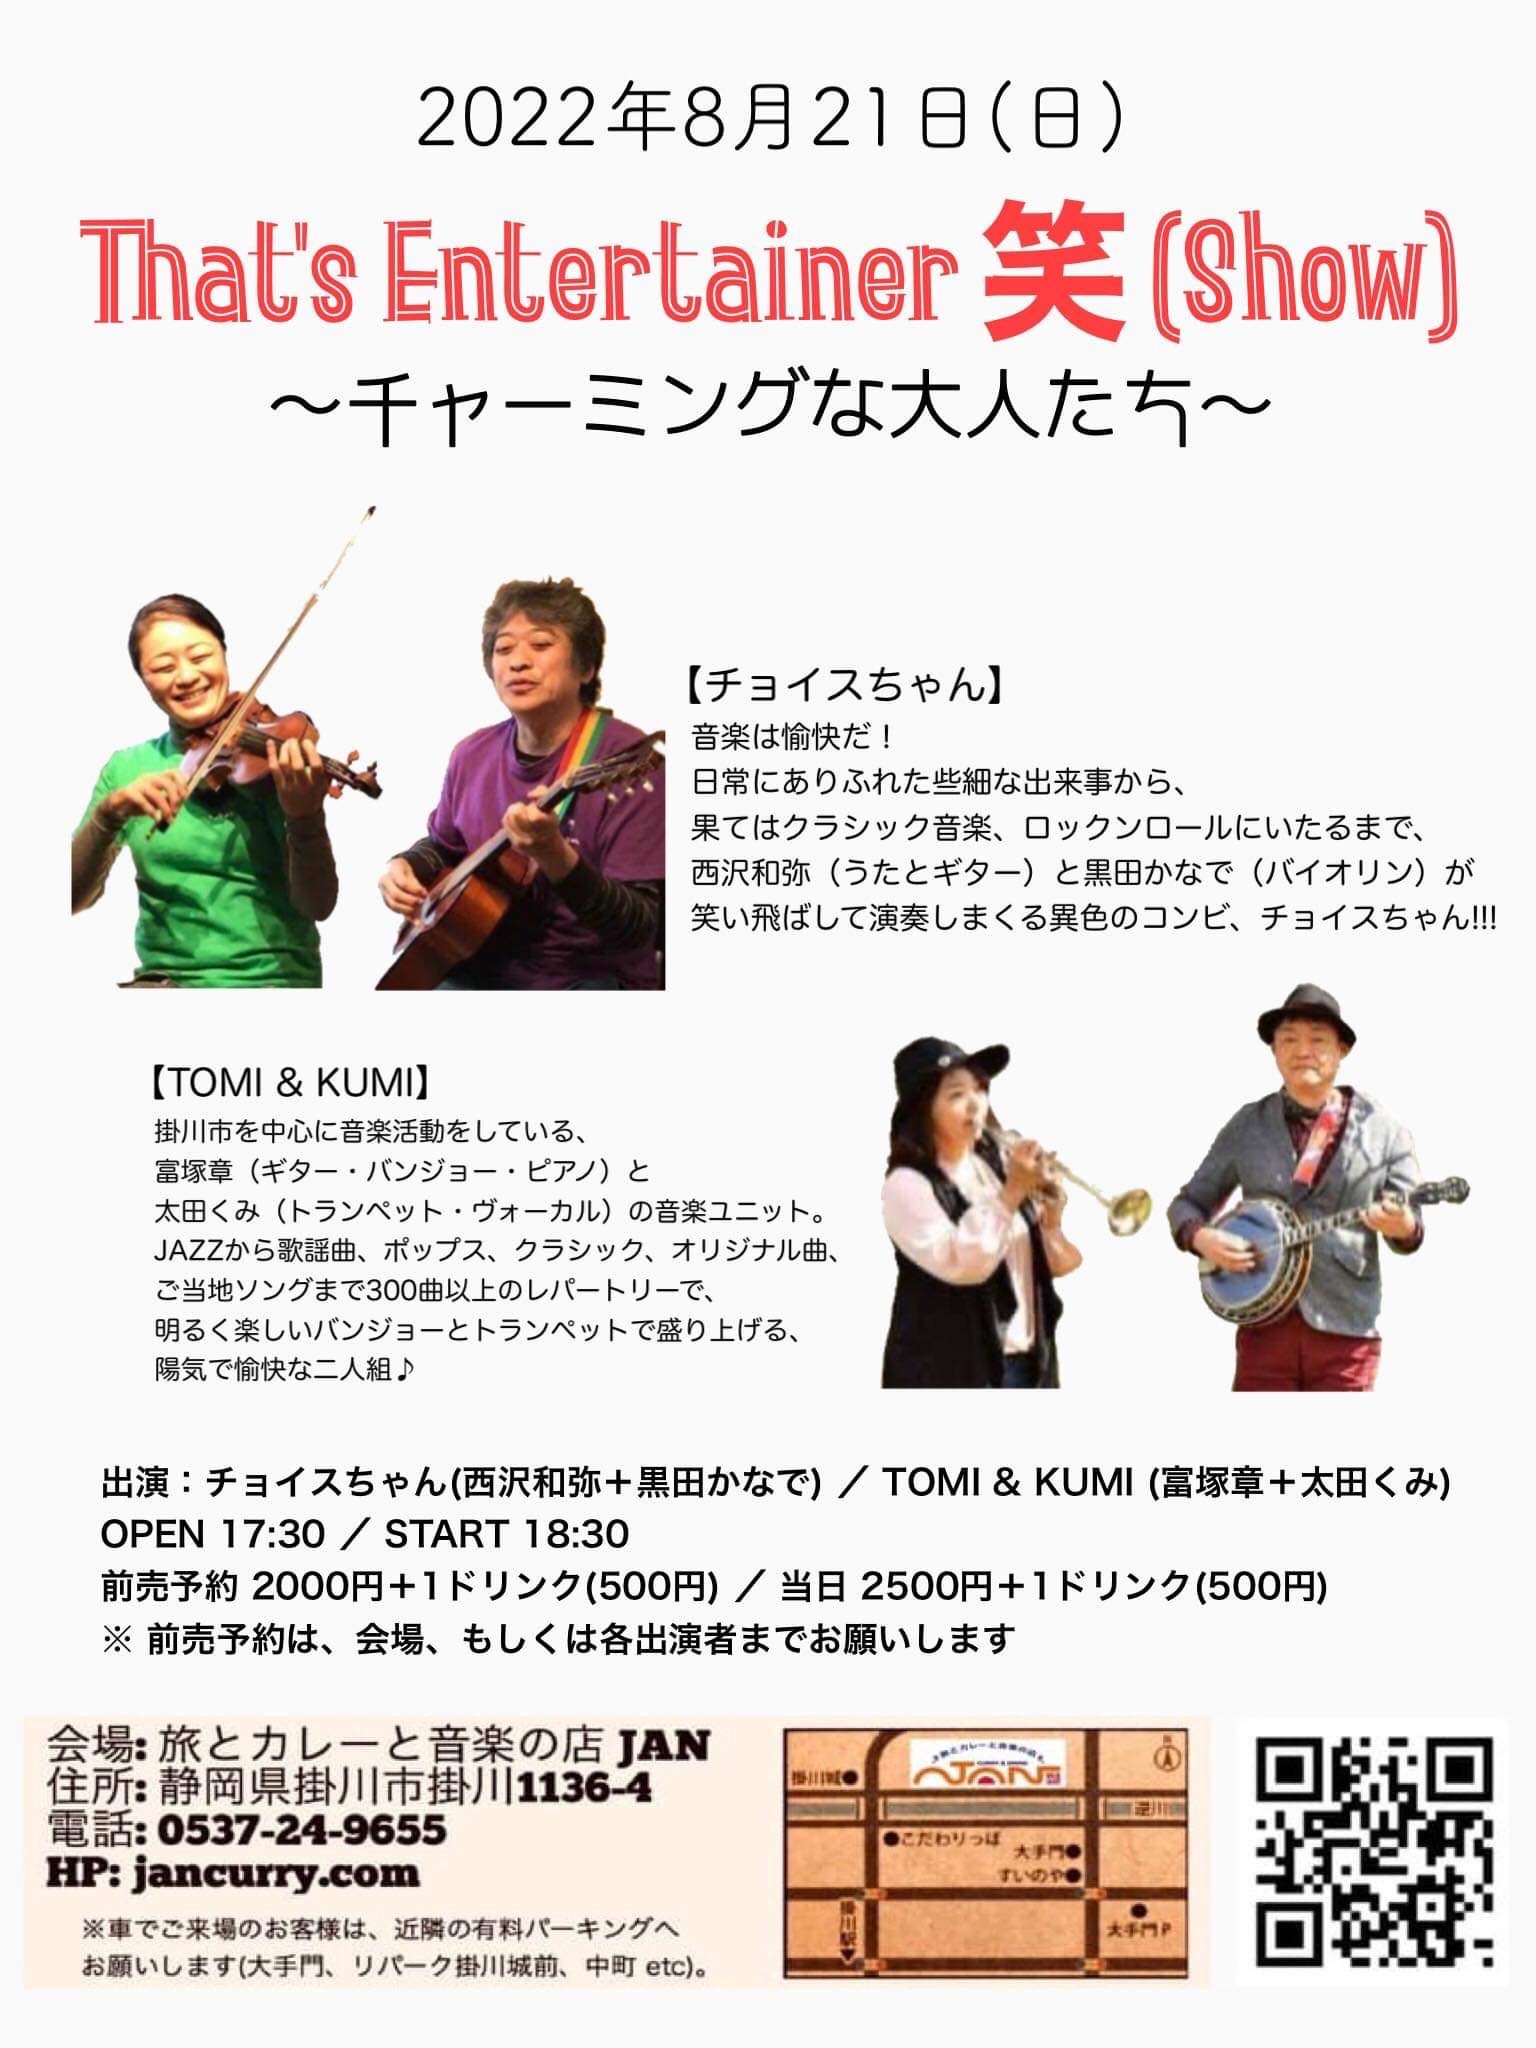 That’s Entertainer 笑(show) 〜チャーミングな大人たち〜